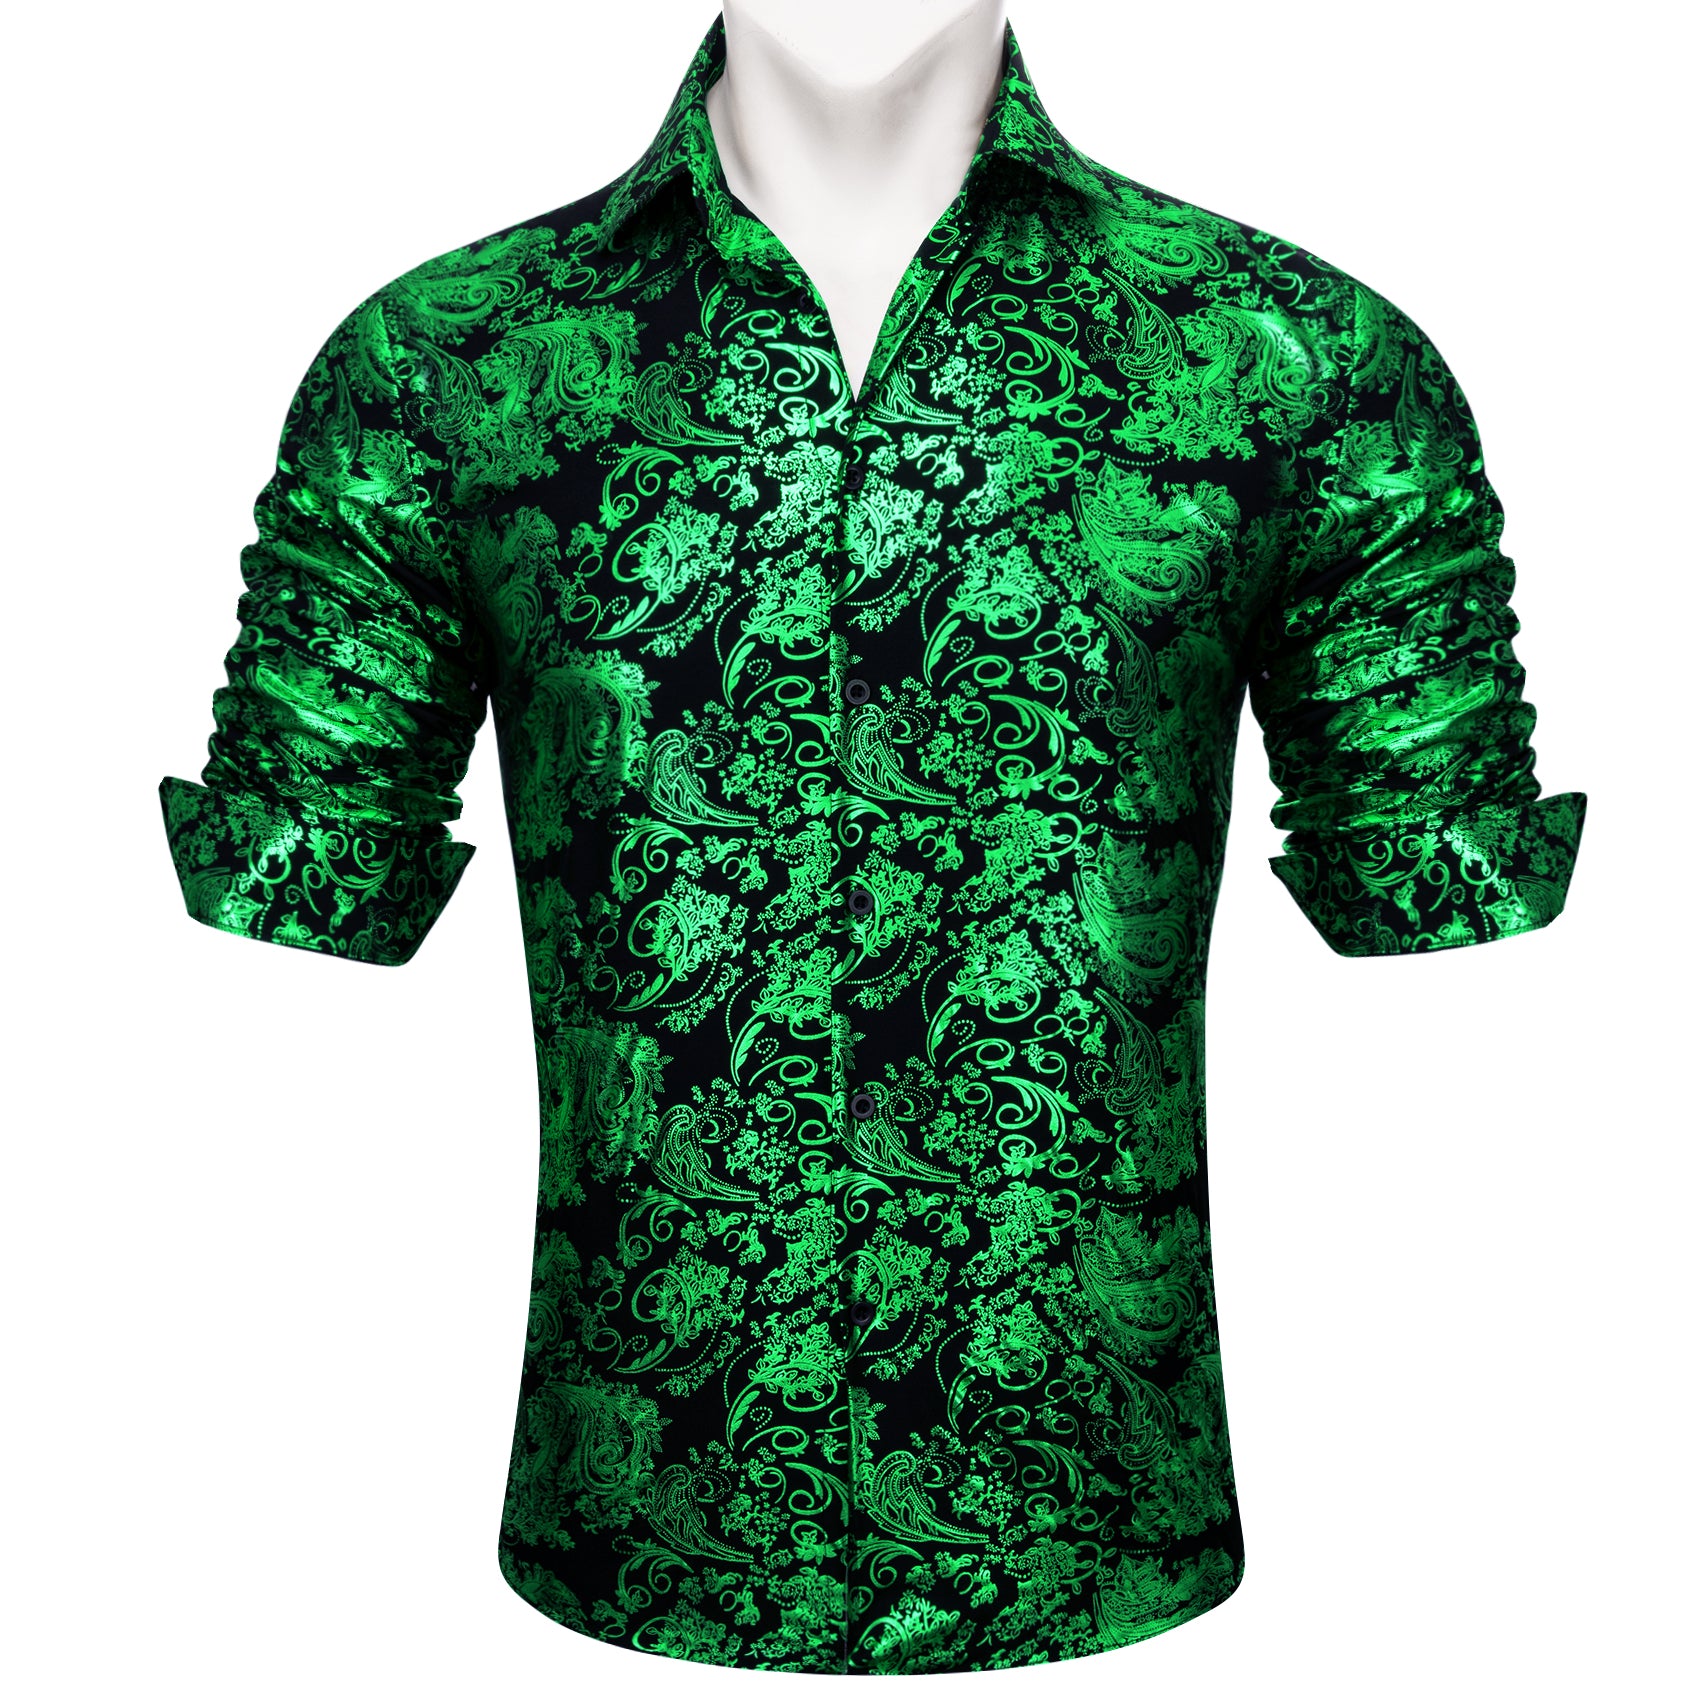 Barry.wang Light Green Paisley Silk Men's Shirt